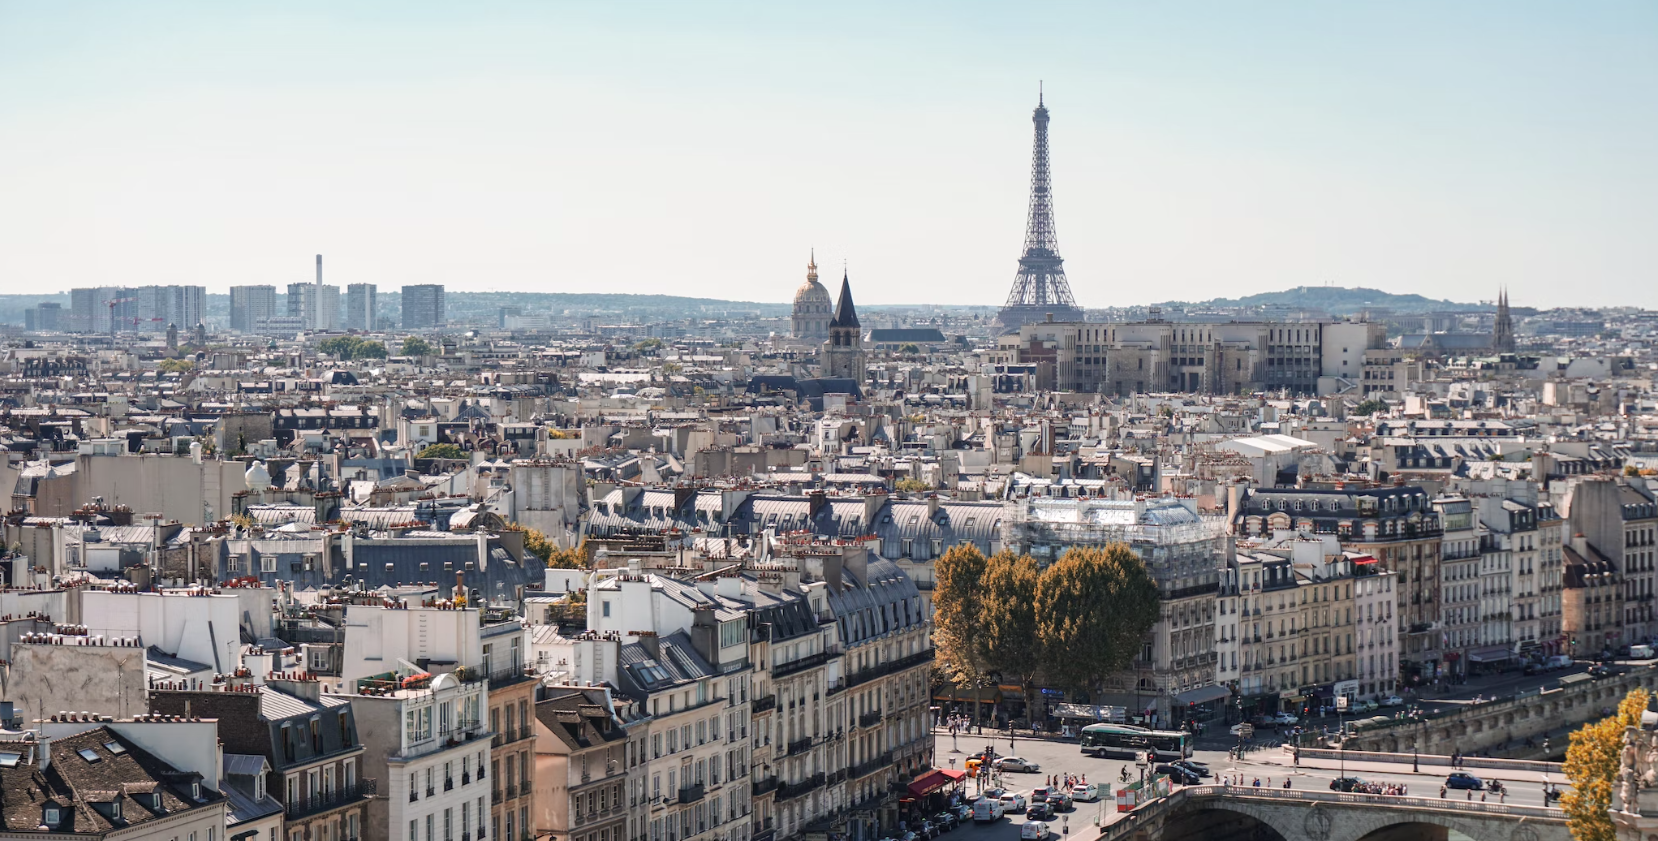 A cityscape of Paris